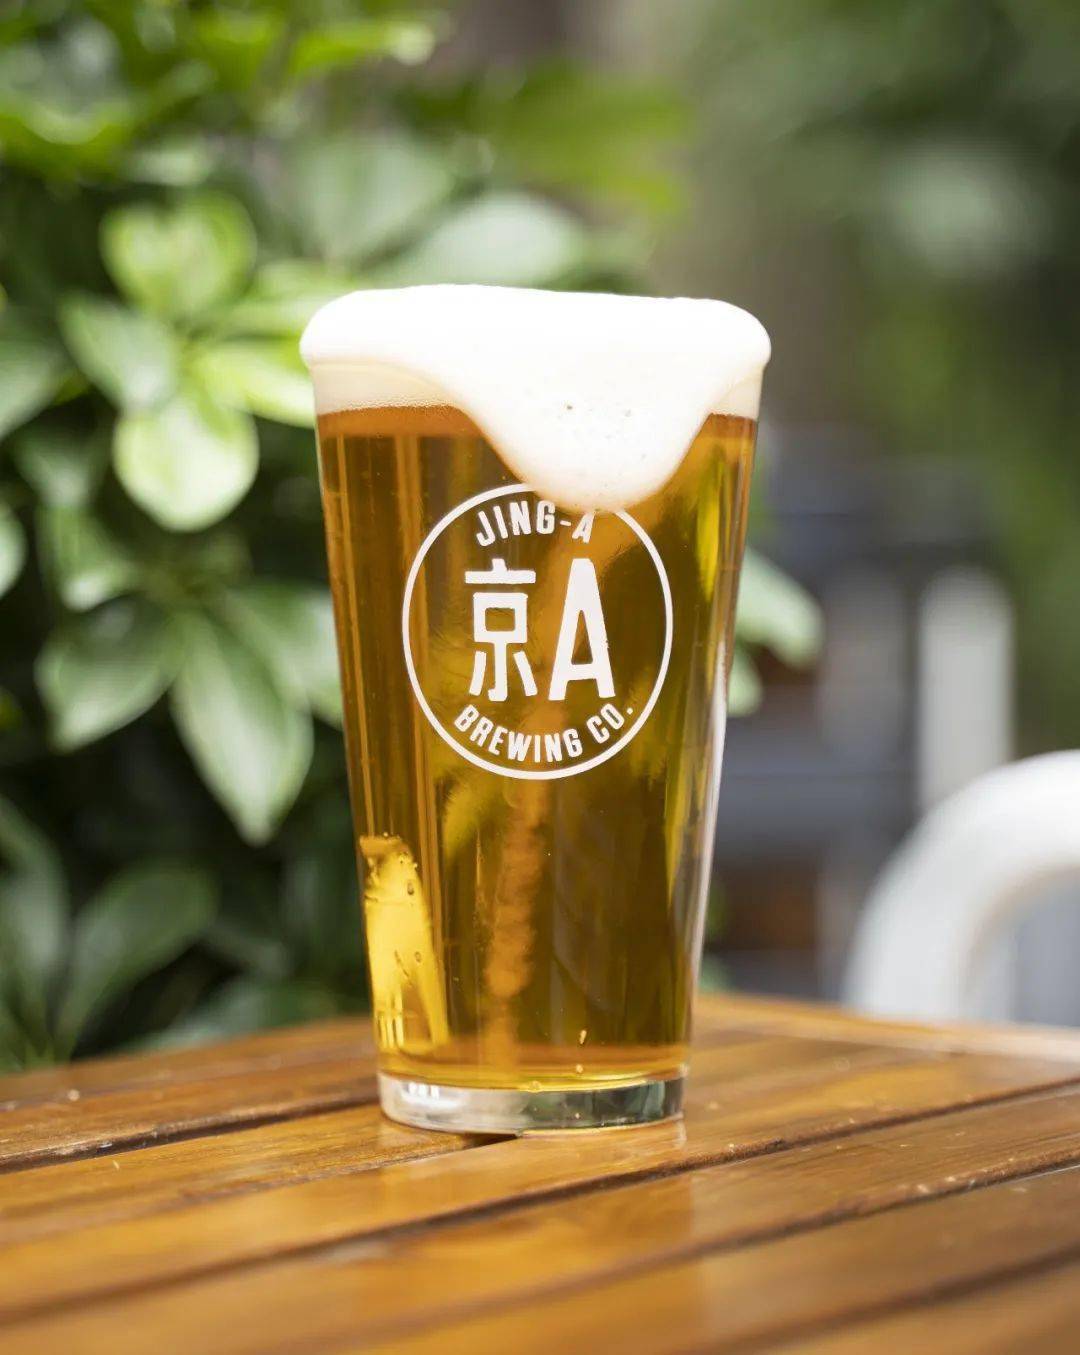 0%这款清爽的啤酒源自京a最受欢迎的飞拳ipa,低酒精度的酒体散发出